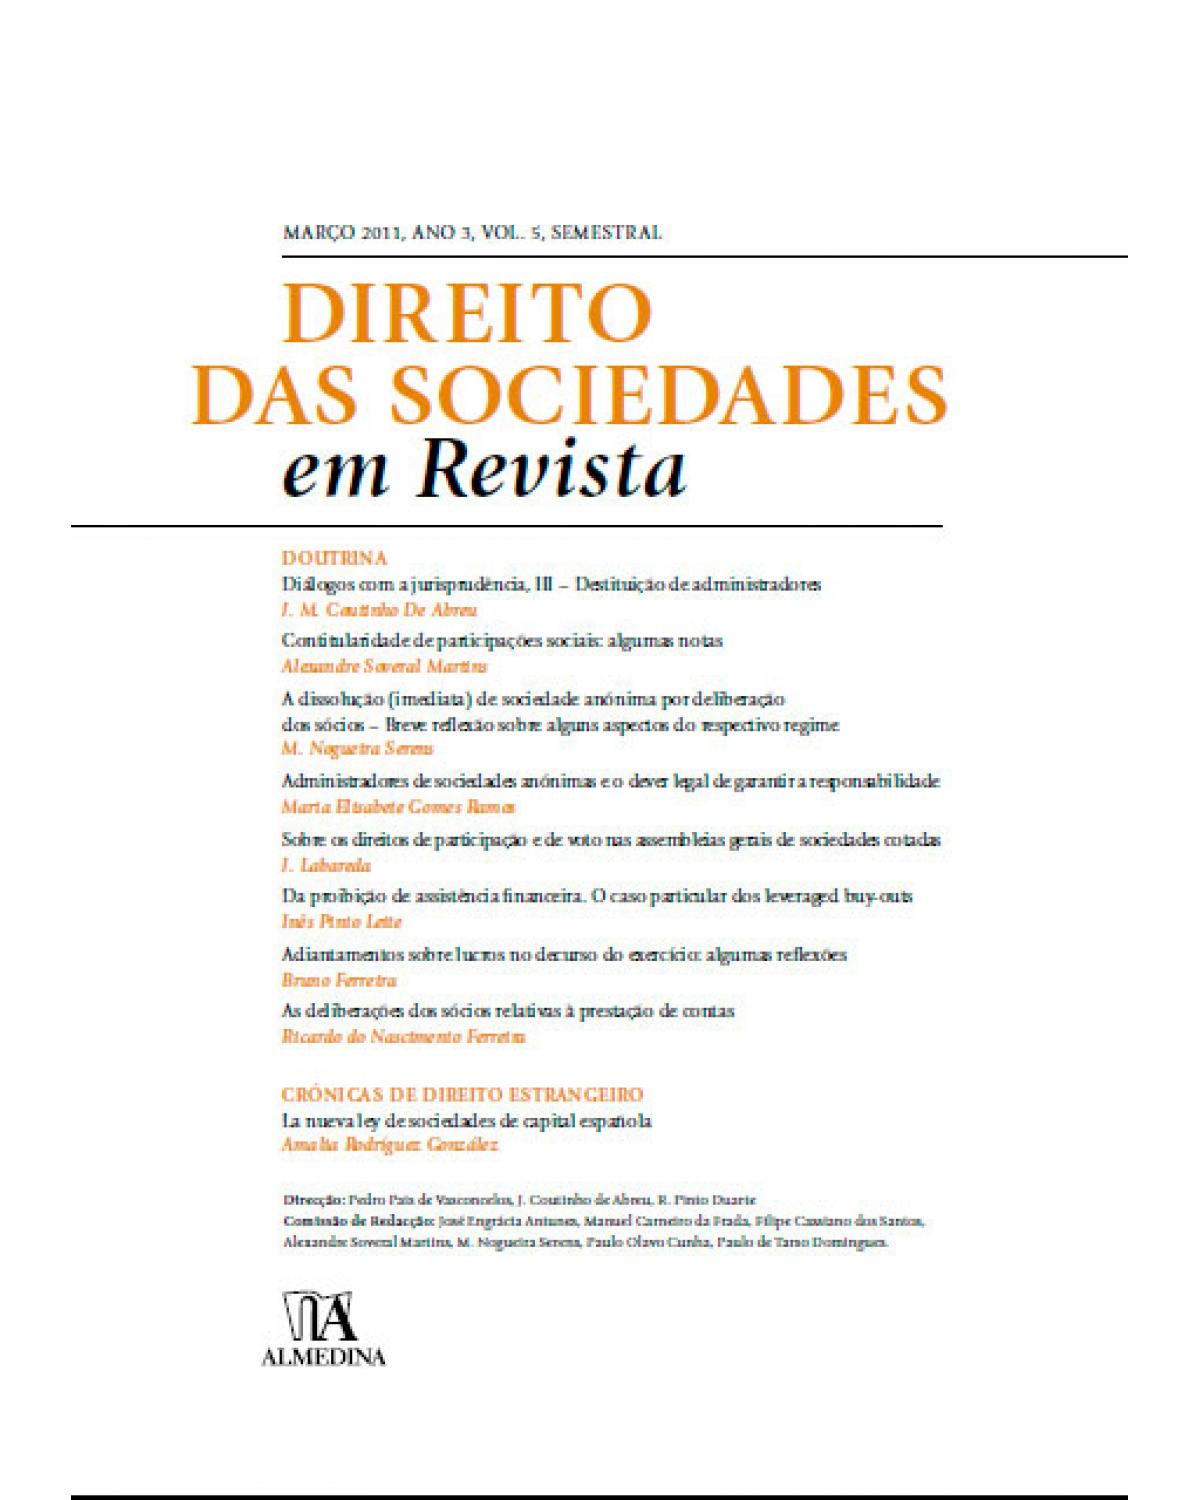 Direito das sociedades em revista - Volume 5: ano 3 (março 2011) - 1ª Edição | 2011